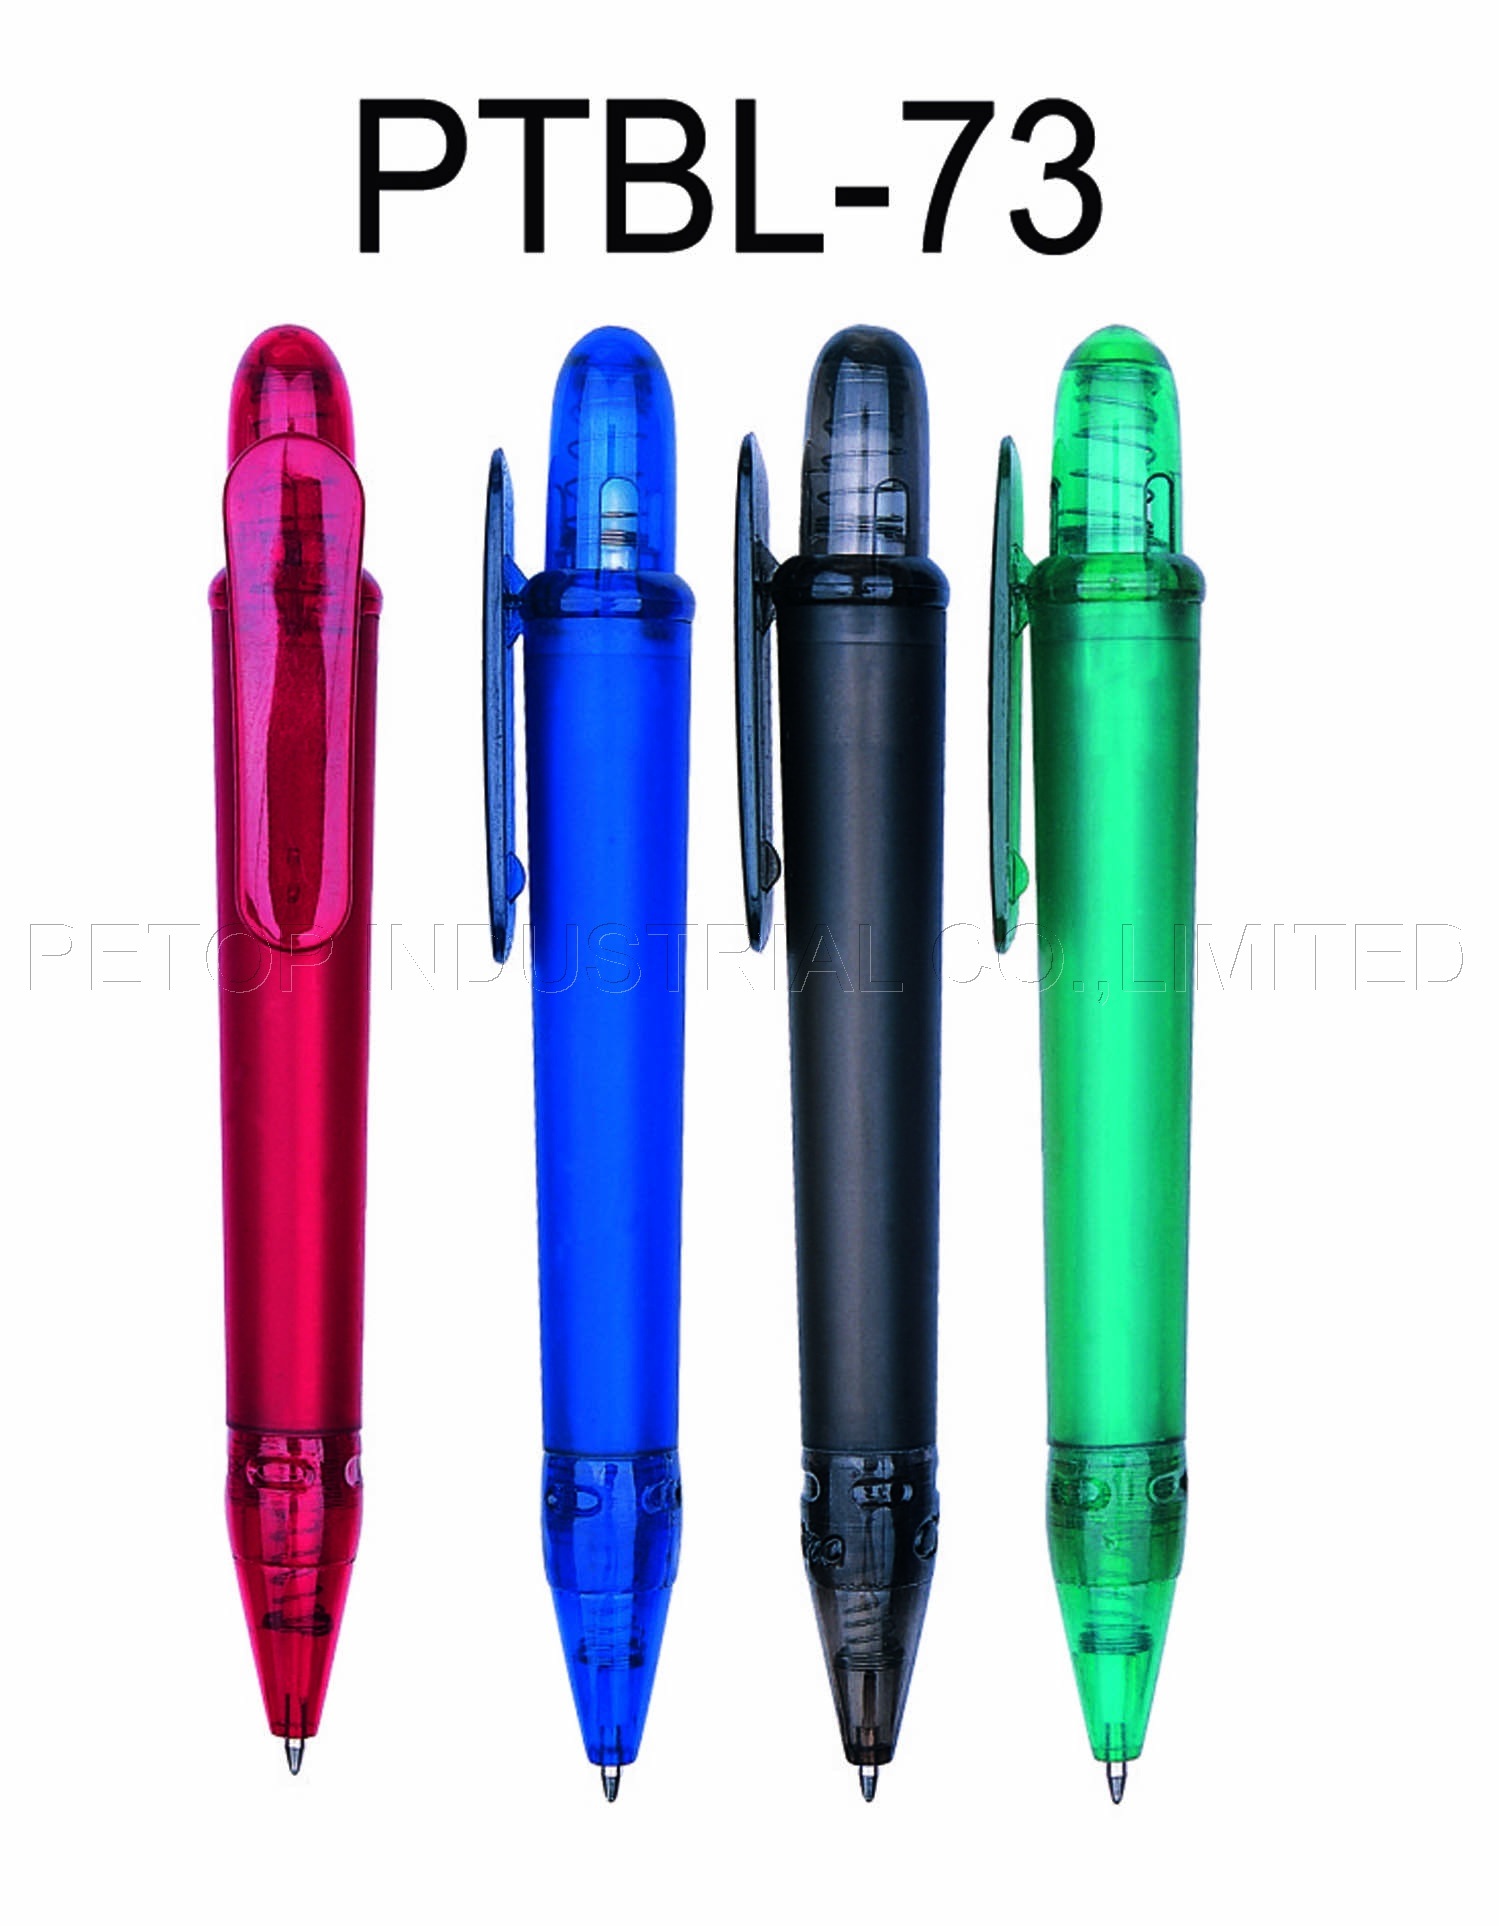 OEM Guest Room Folder Pen, Plastic Ball Pen, Roller Pen (PTBL-73)